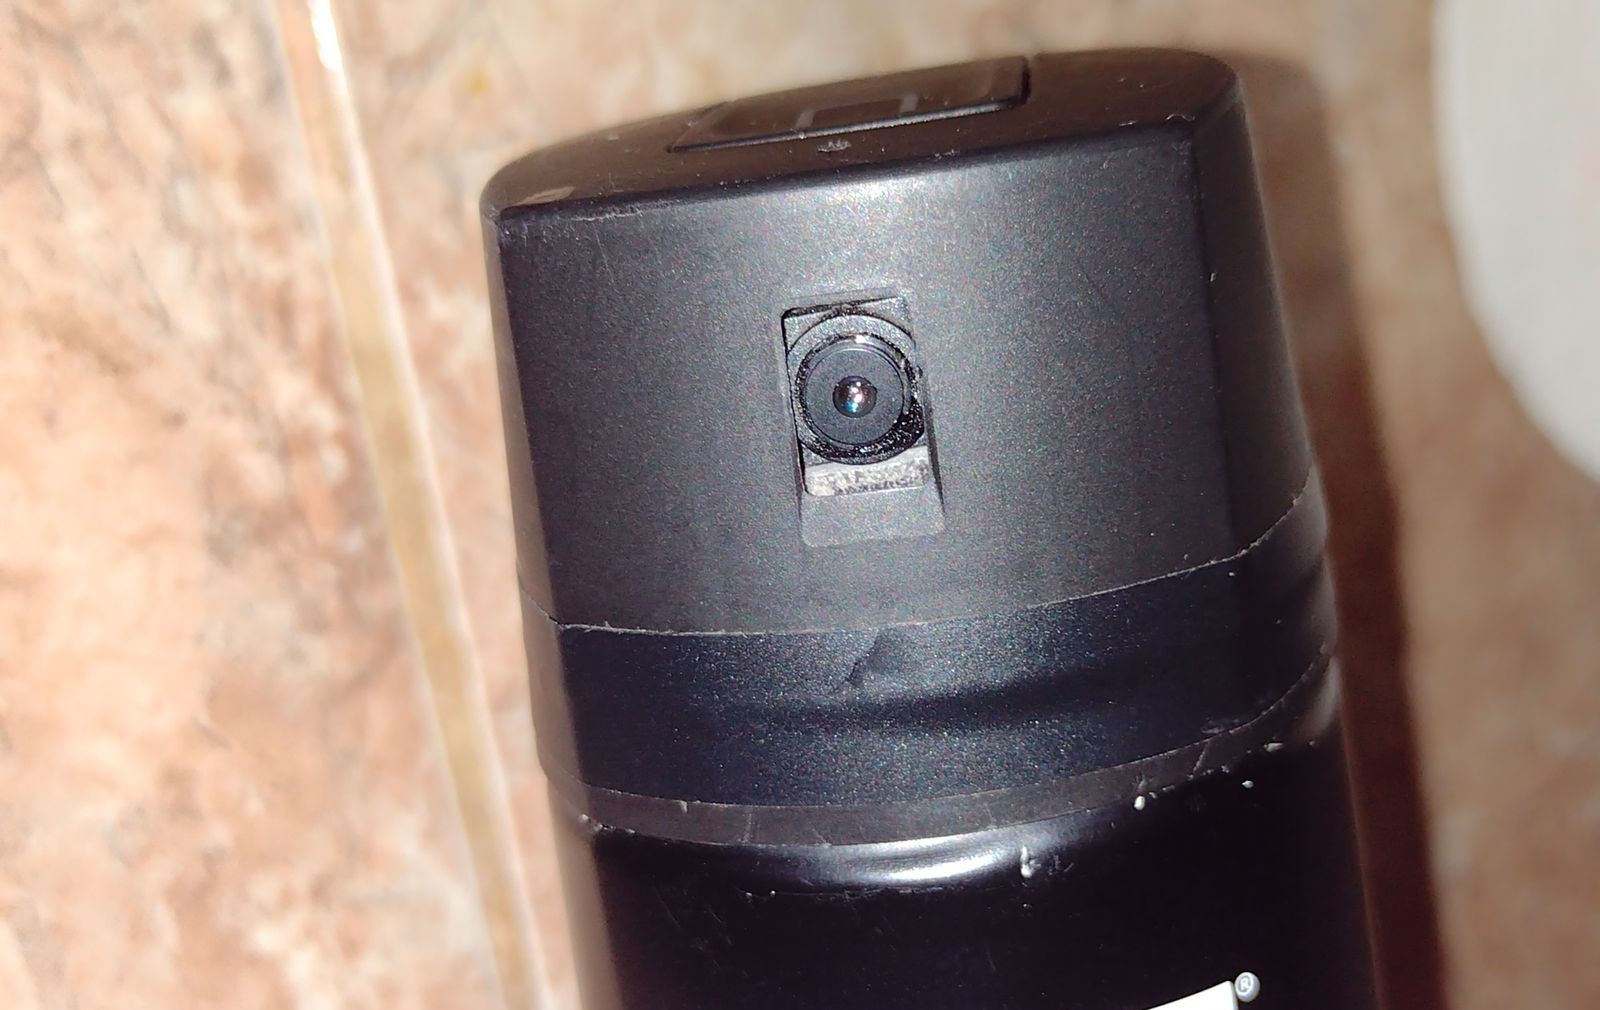 Una mujer creyó comprar un aromatizador, pero en realidad era una cámara  que la espiaba en el baño